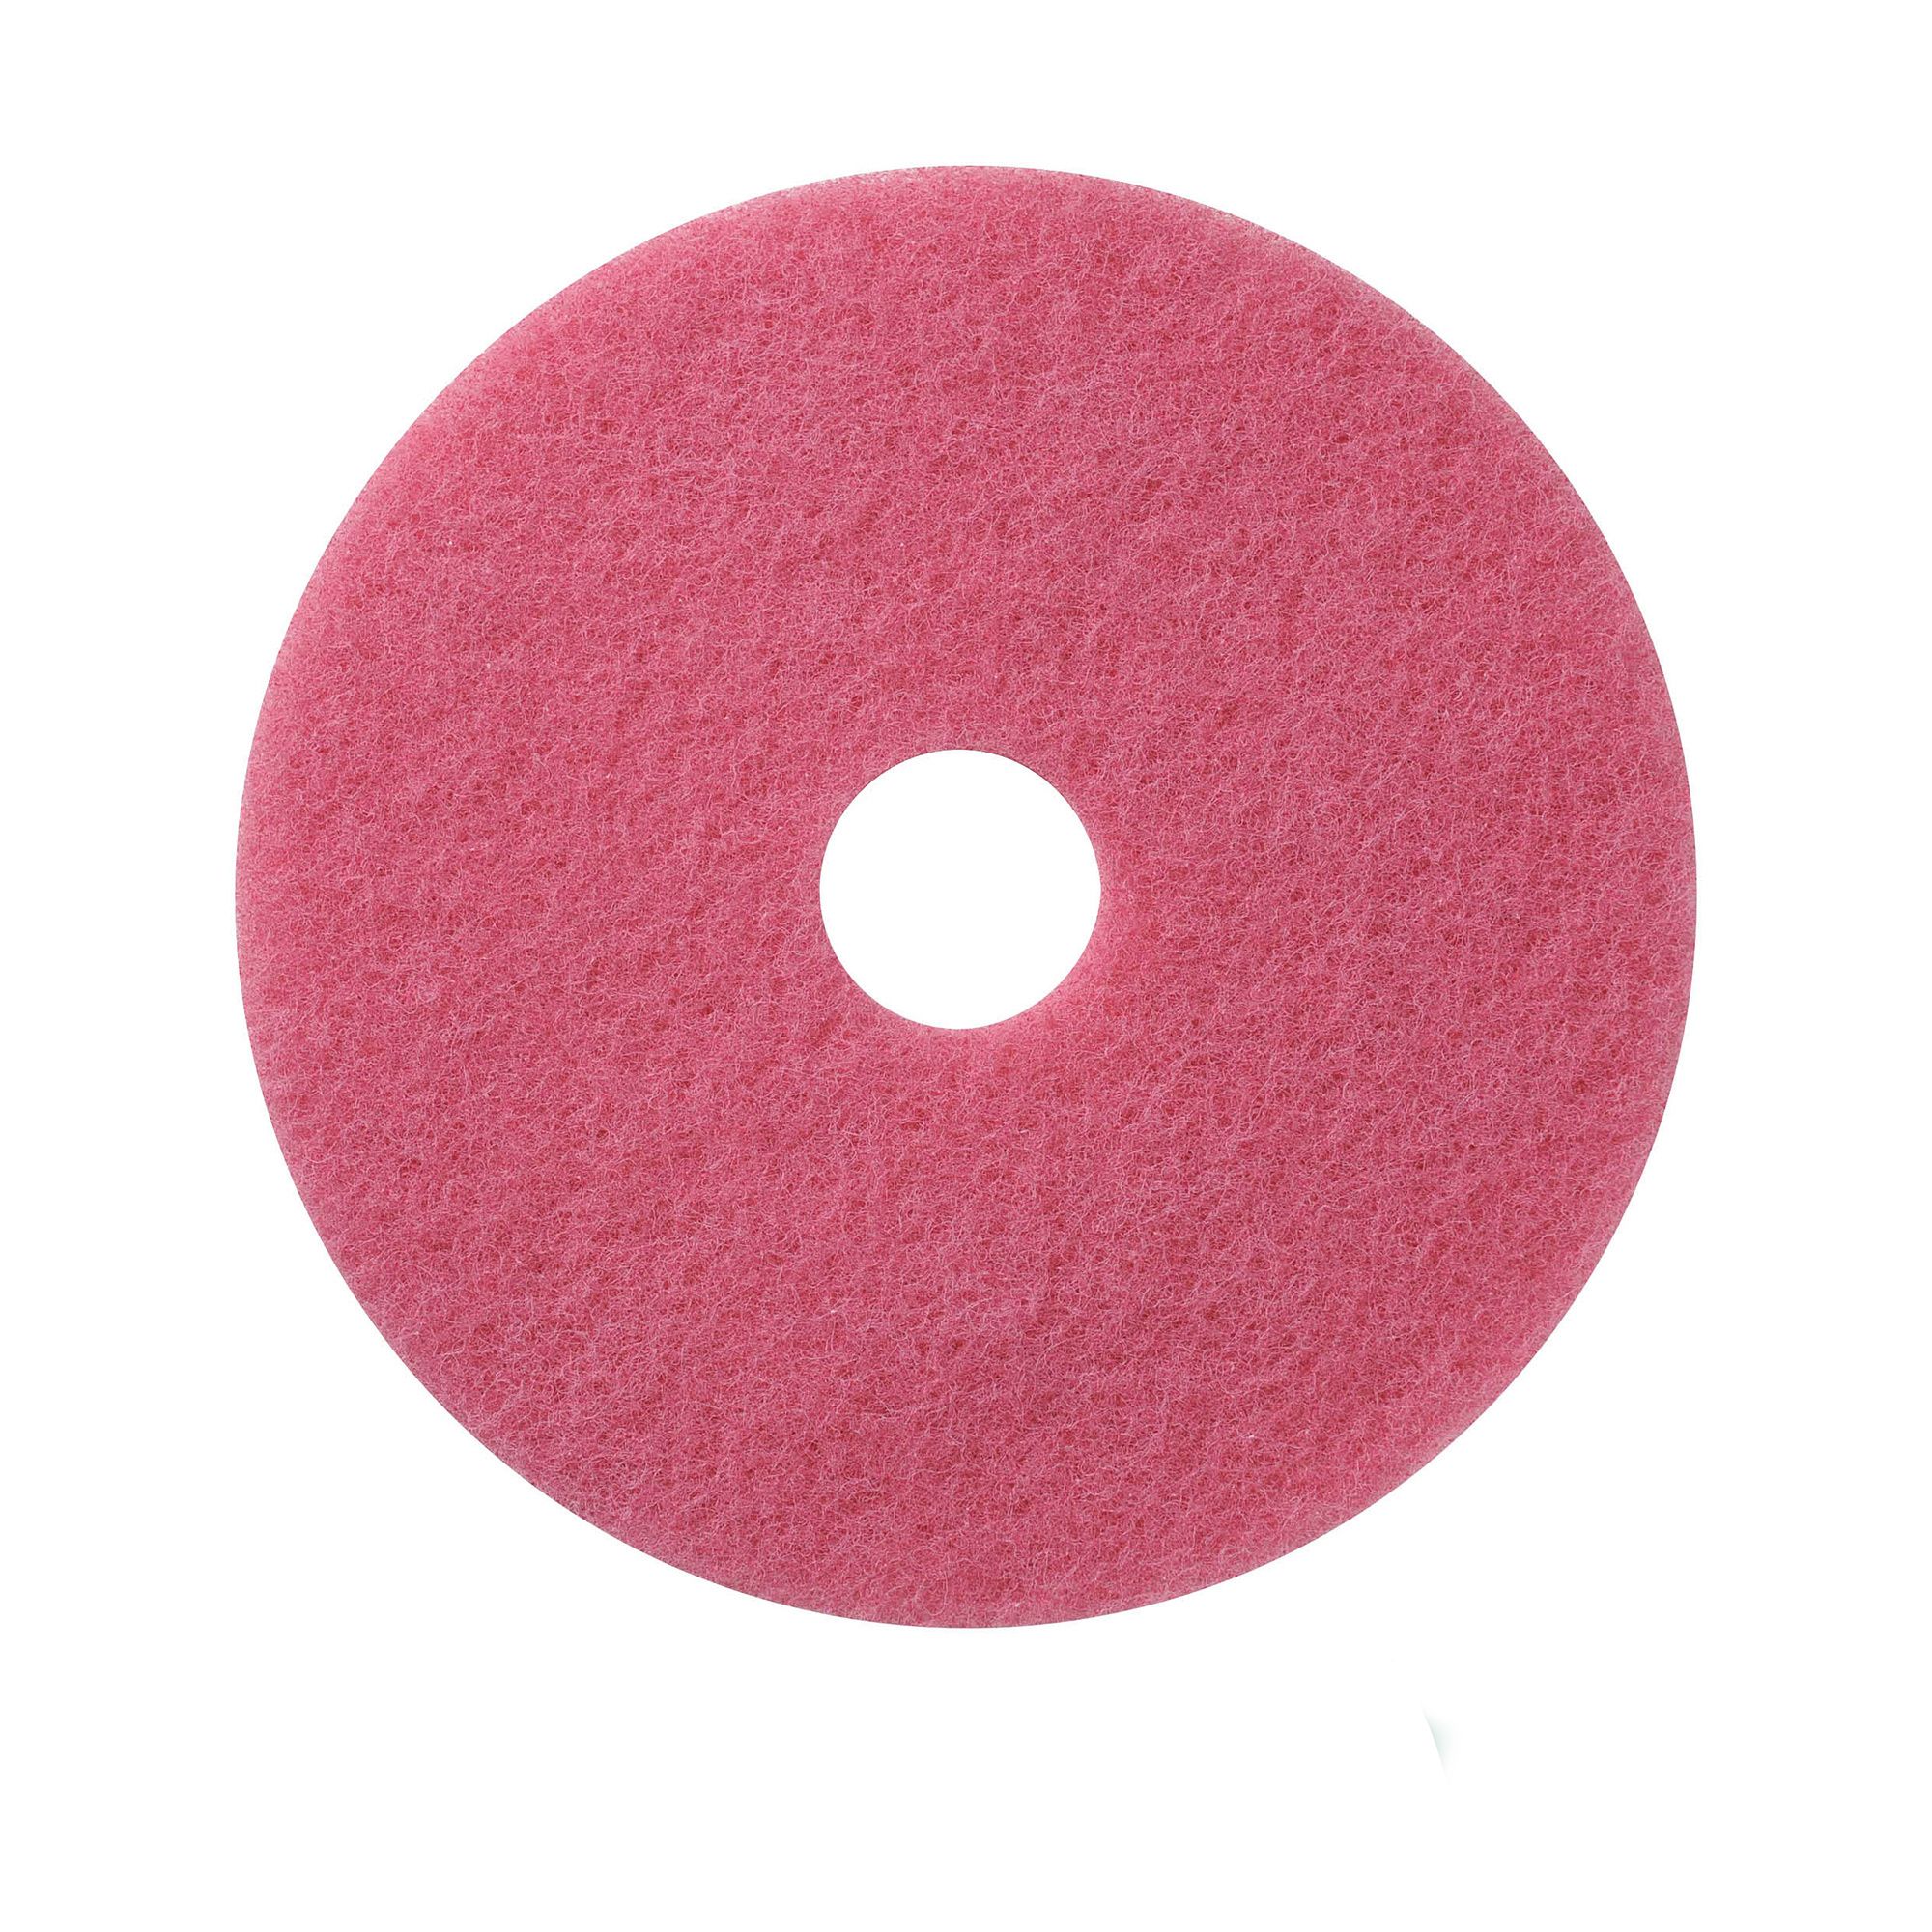 NuPad roze (schrobben), per 5 stuks, 16 inch / 406 mm